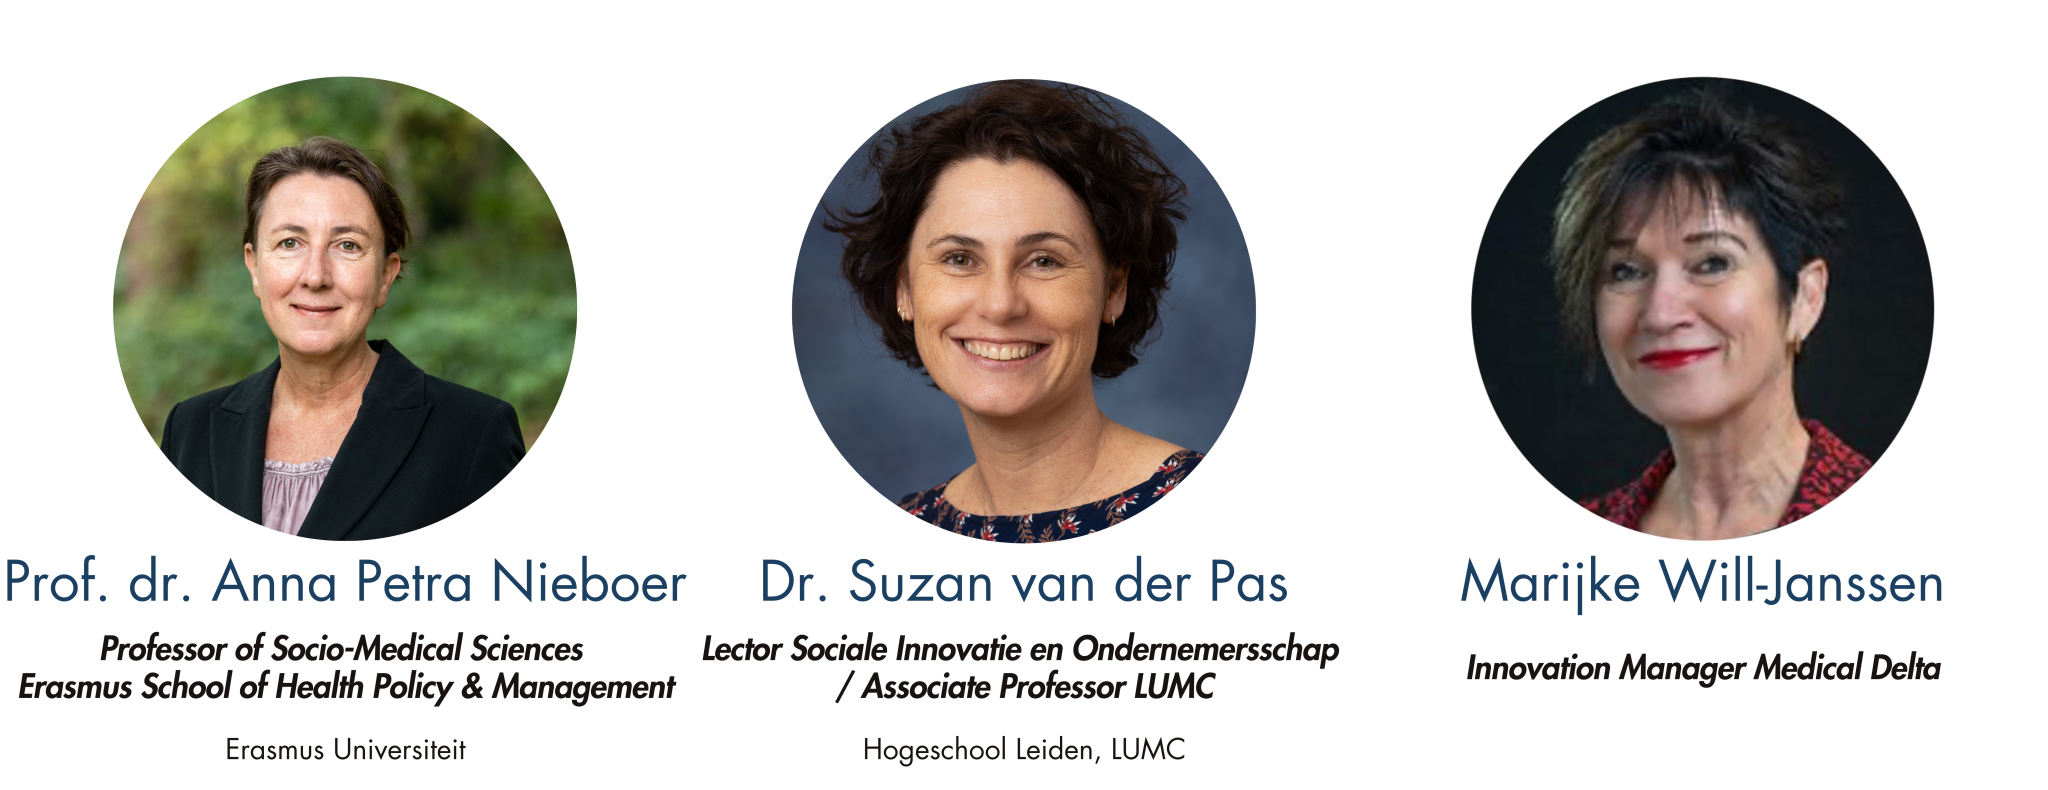 Dagelijks bestuur: Prof.dr. Anna Petra Nieboer, Dr. Suzan van der Pas, Marijke Will-Janssen